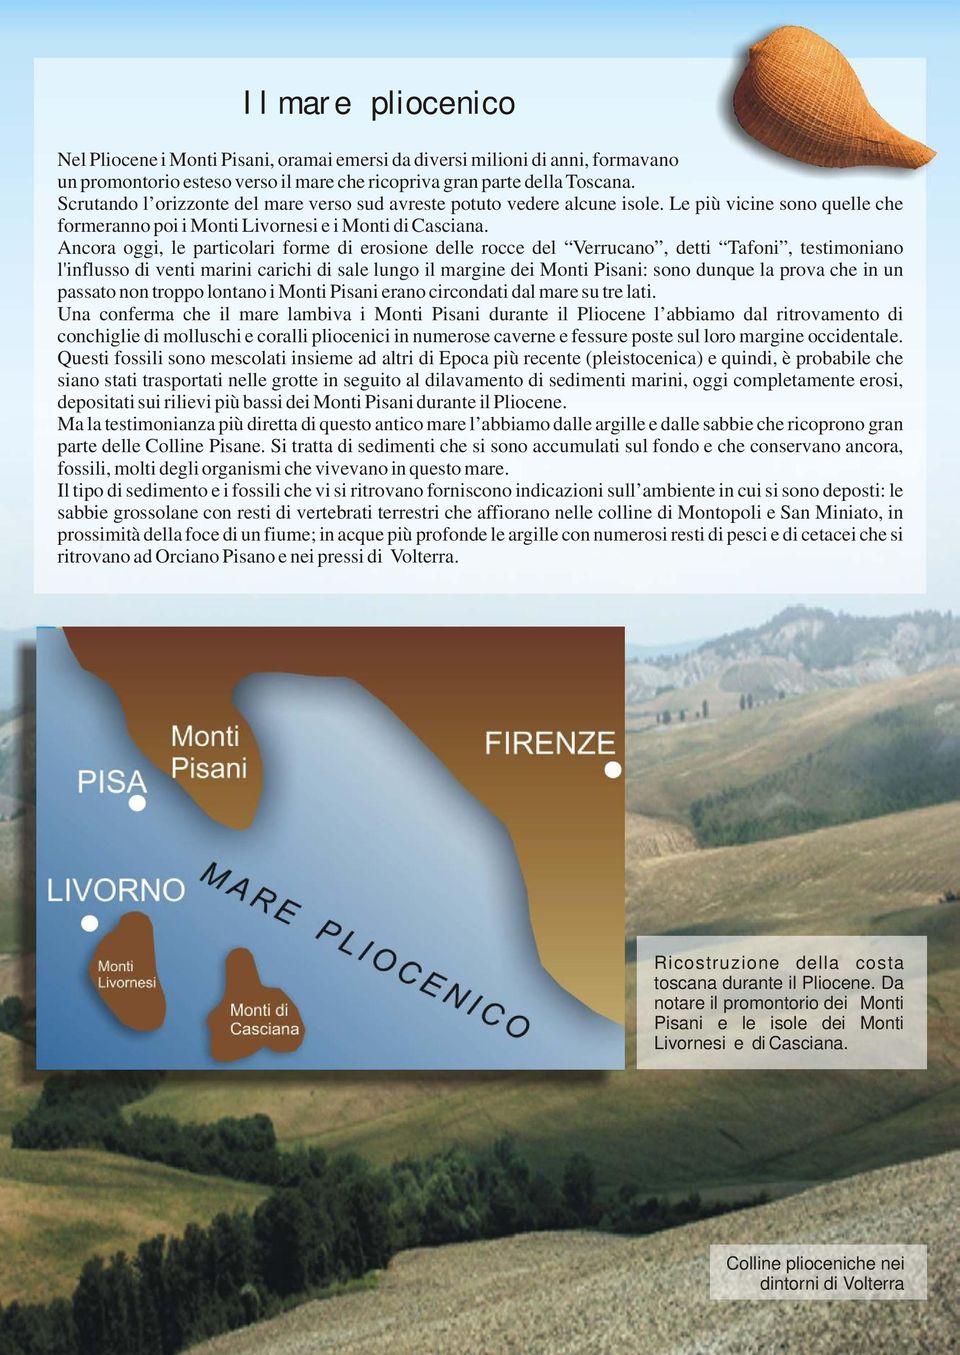 Ancora oggi, le particolari forme di erosione delle rocce del Verrucano, detti Tafoni, testimoniano l'influsso di venti marini carichi di sale lungo il margine dei Monti Pisani: sono dunque la prova